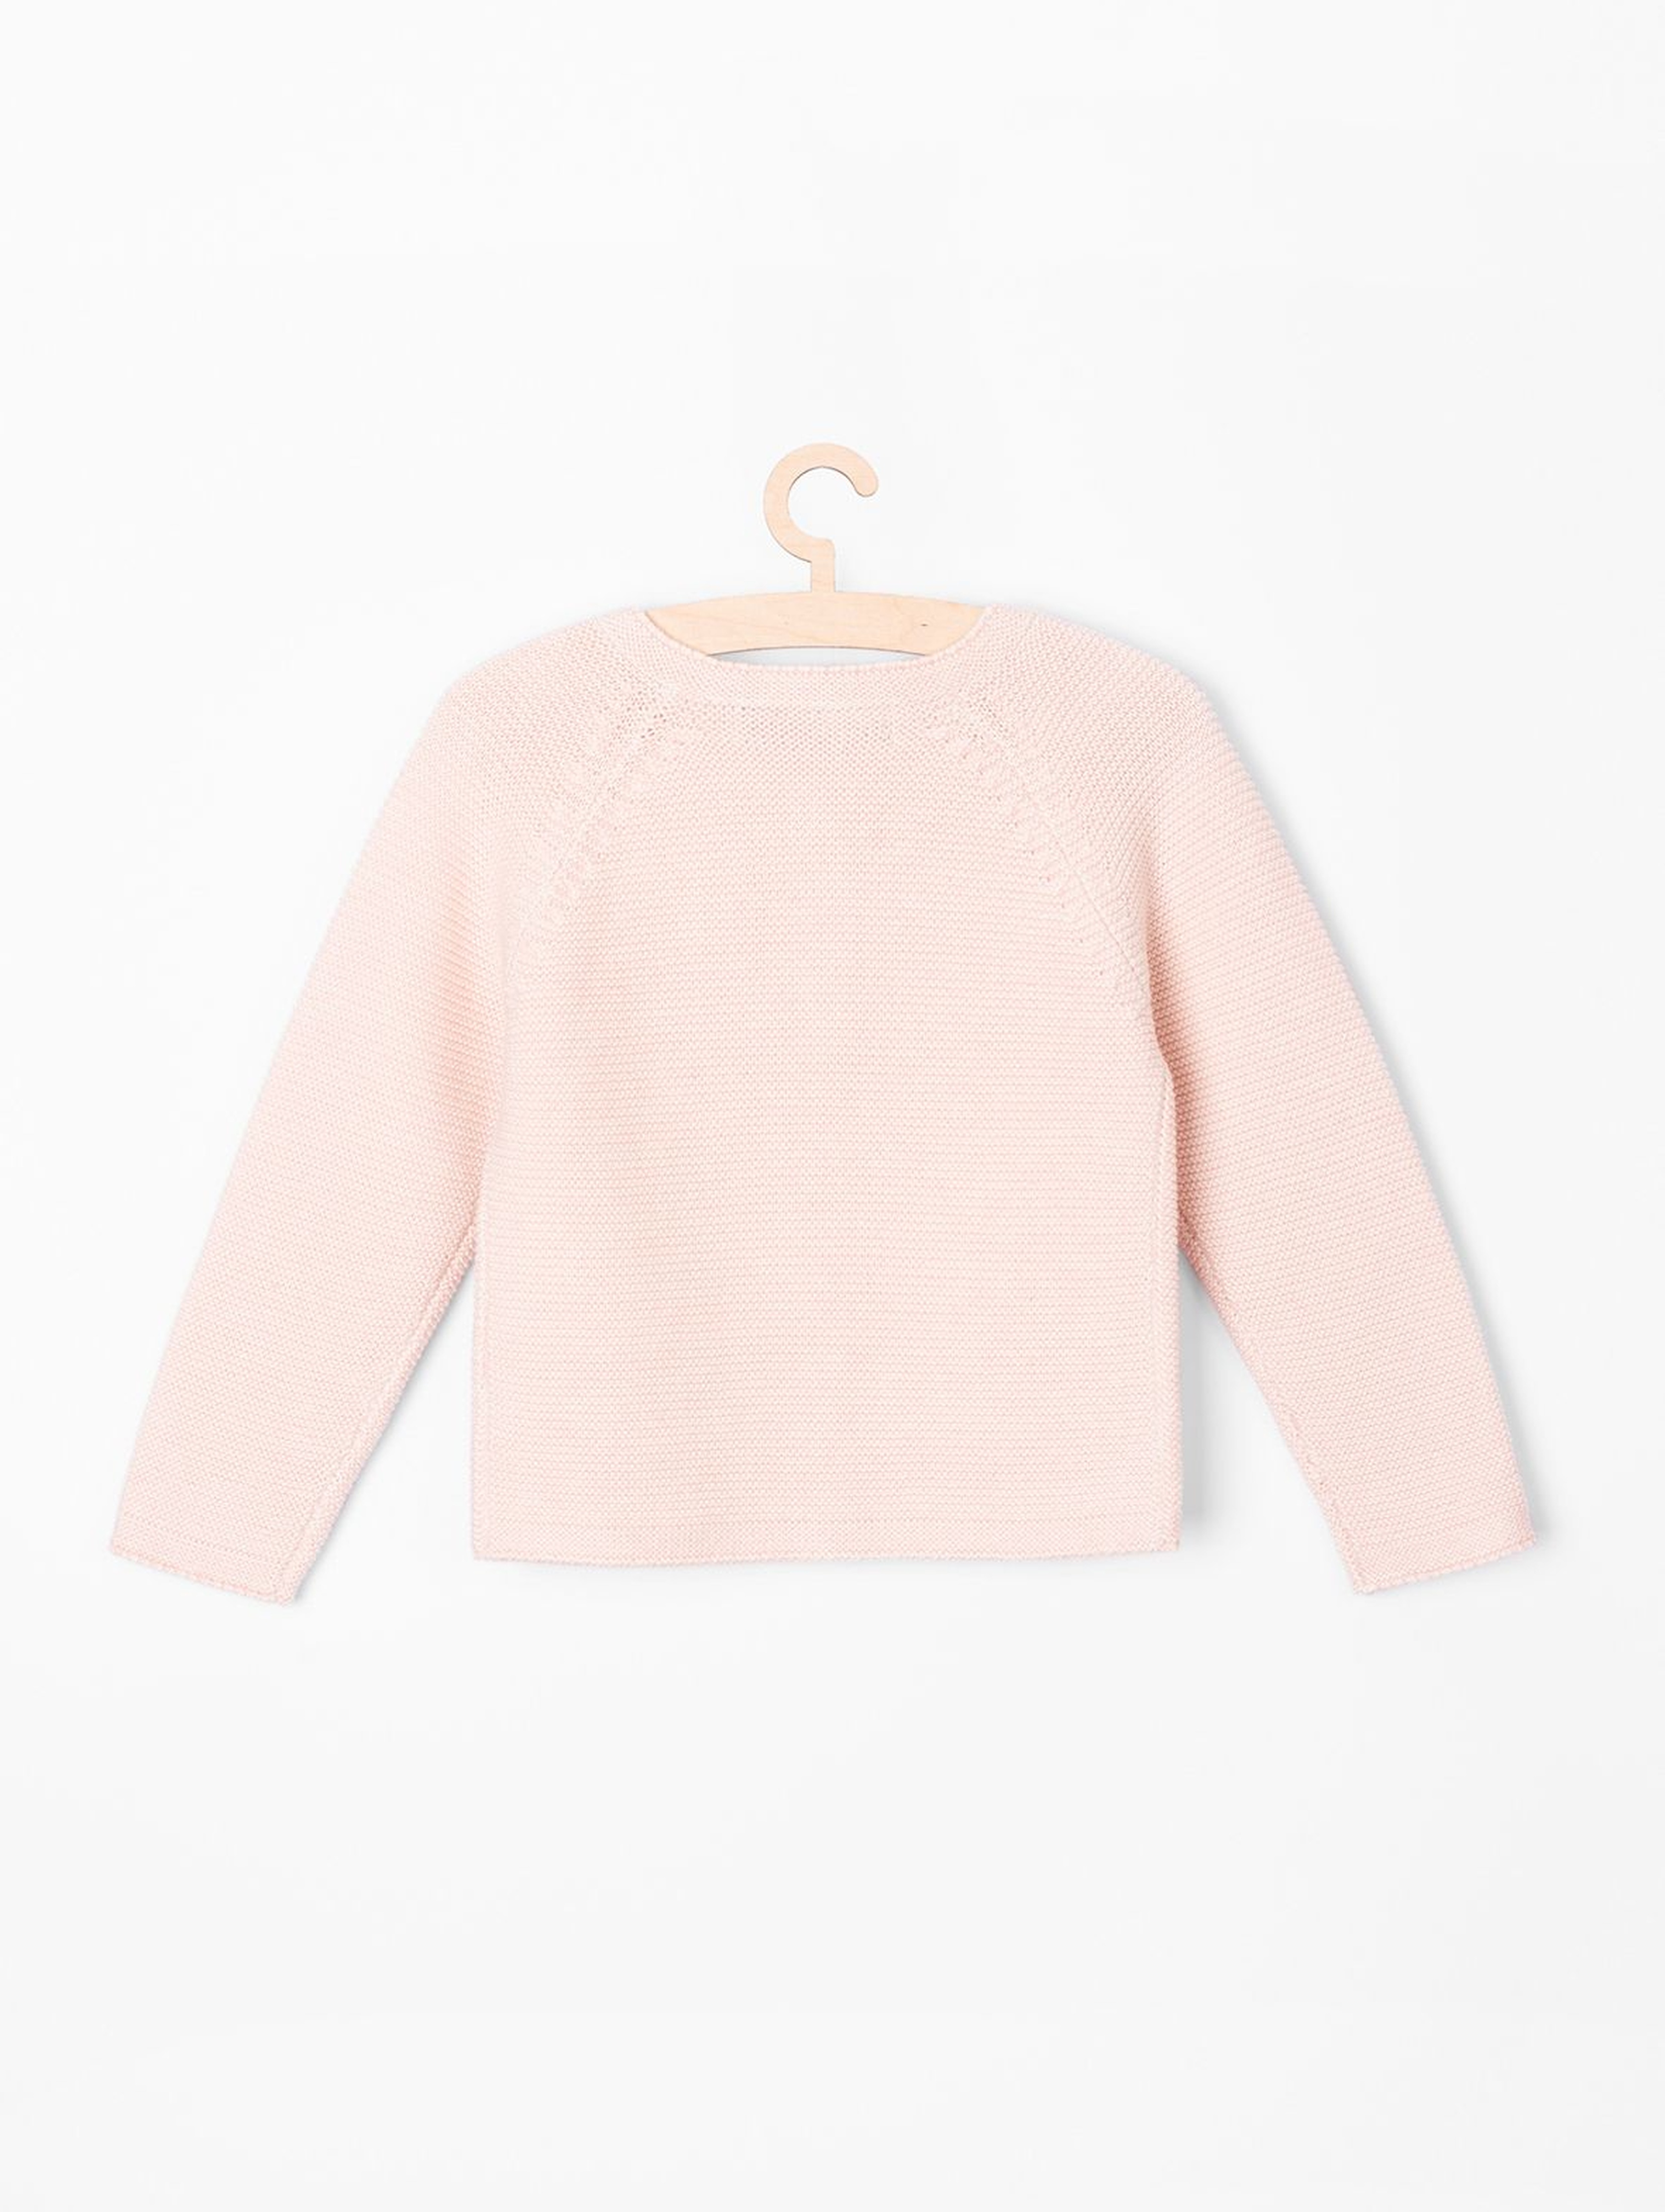 Sweter dziewczęcy - różowy